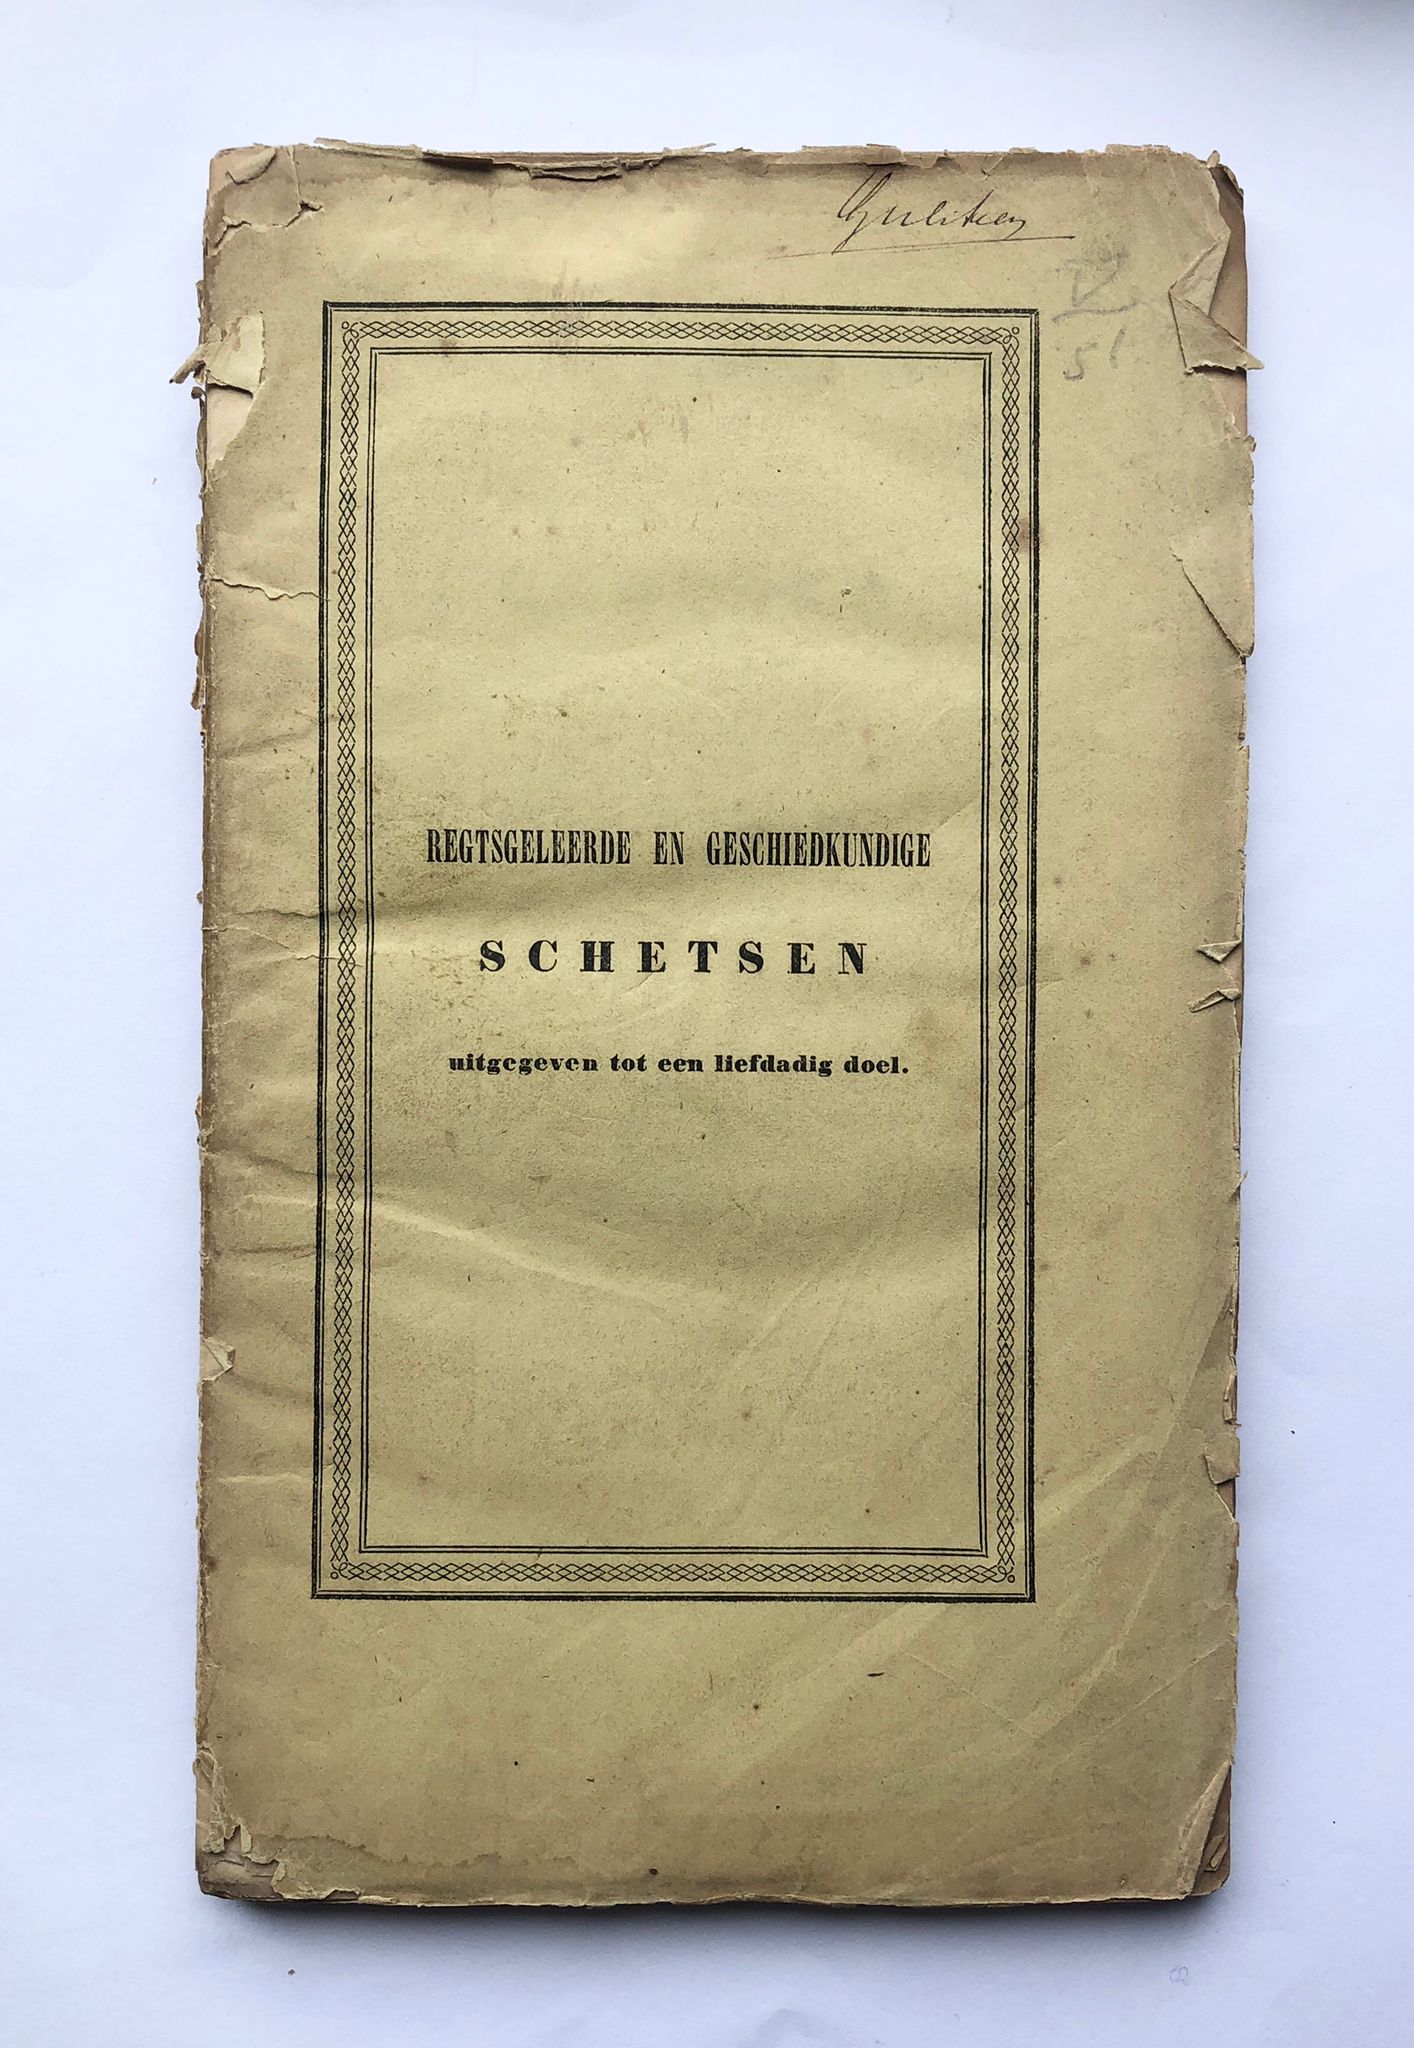 [Friesland, Sneek] Regtsgeleerde en geschiedkundige schetsen uitgegeven tot een liefdadig doel, J. F. van Druten, Sneek, 1844, 163 pp.